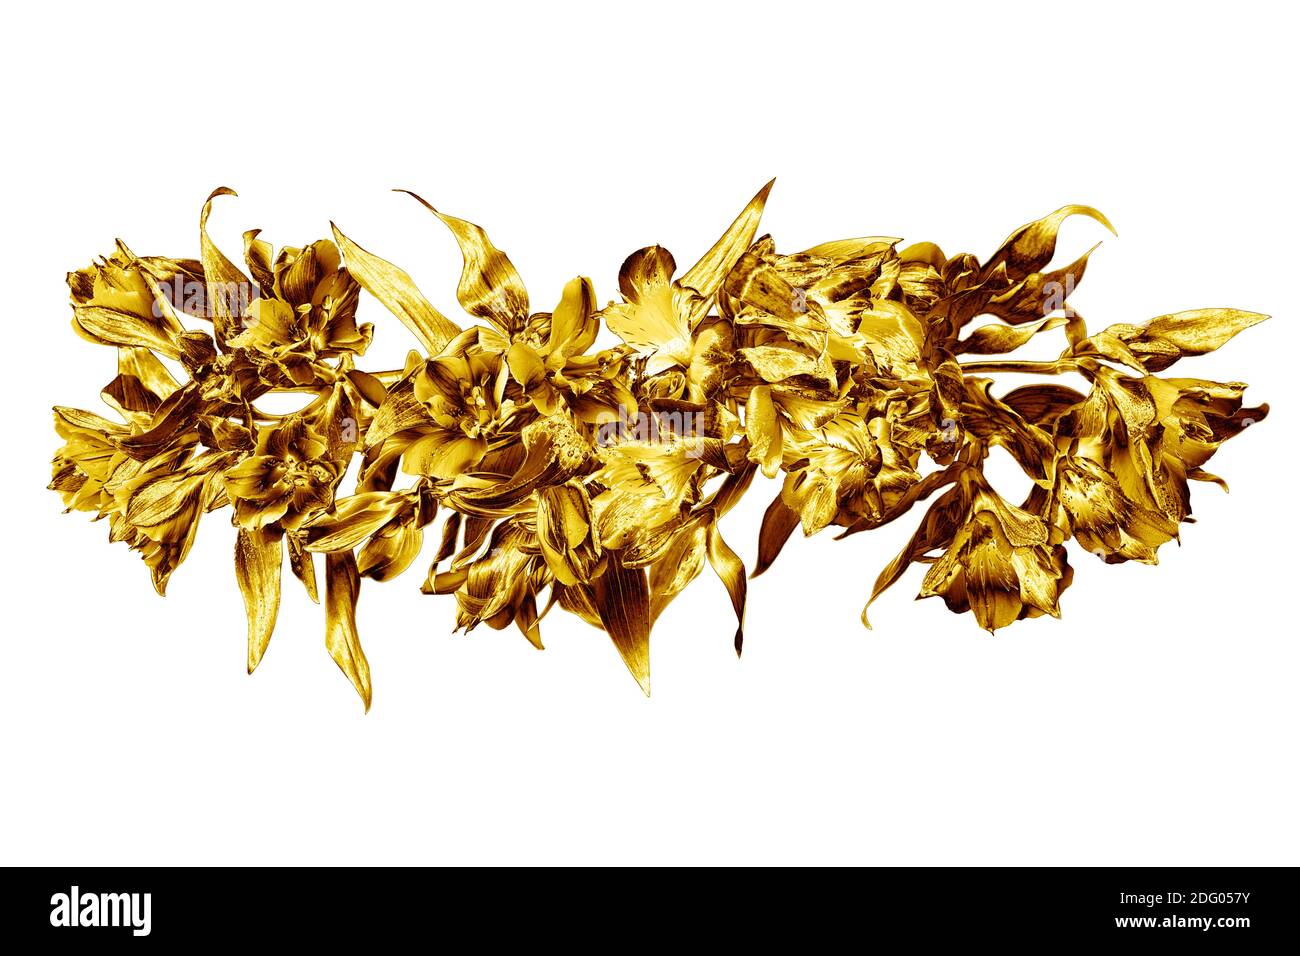 Goldene Blumen Blumenstrauß weißen Hintergrund isoliert Nahaufnahme, Gold  Lilie Blumenstrauß, glänzend gelbe Metallblätter, Blumenzweig, dekorative  Grenze, Muster Stockfotografie - Alamy